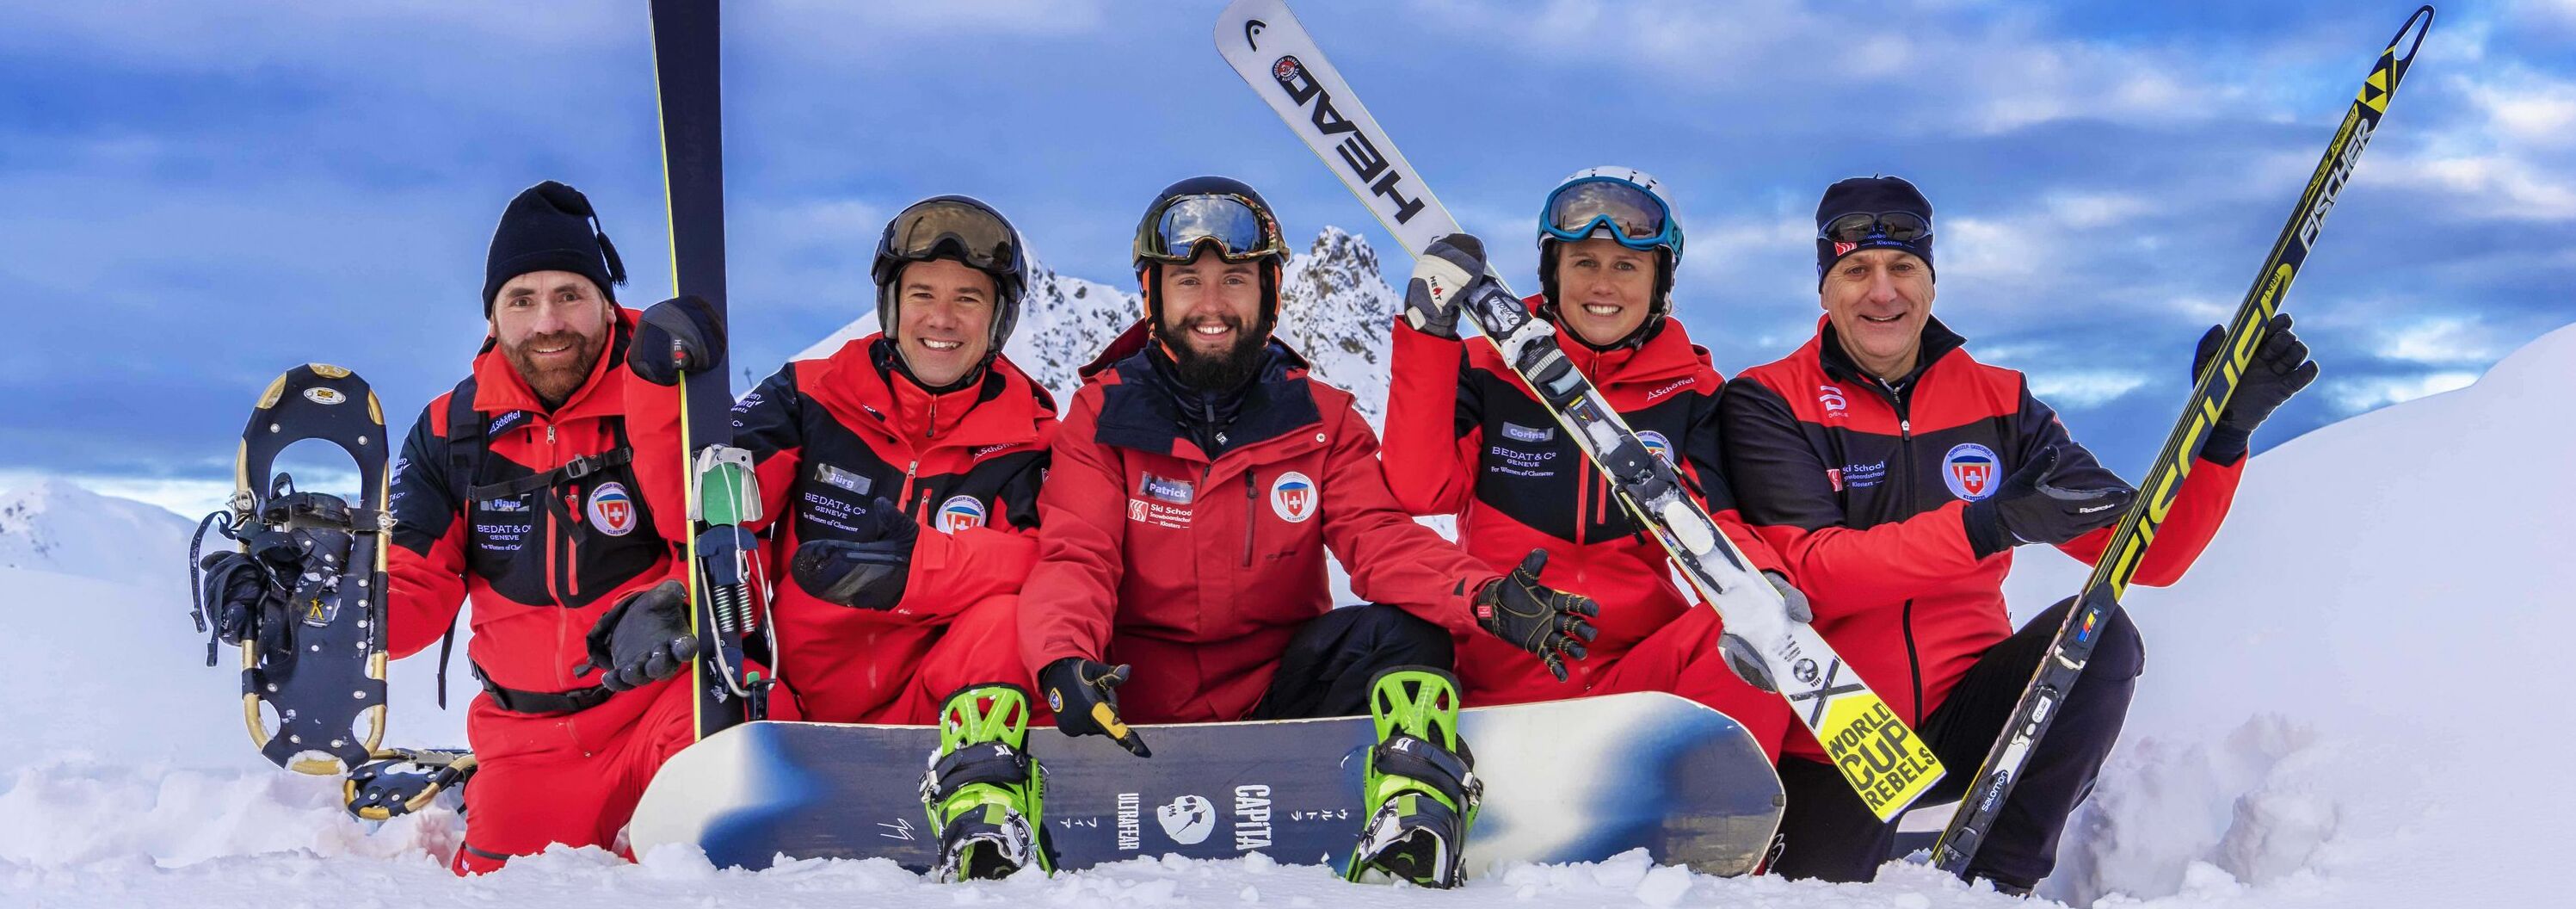 Klosters Ski School team posing in the ski area 